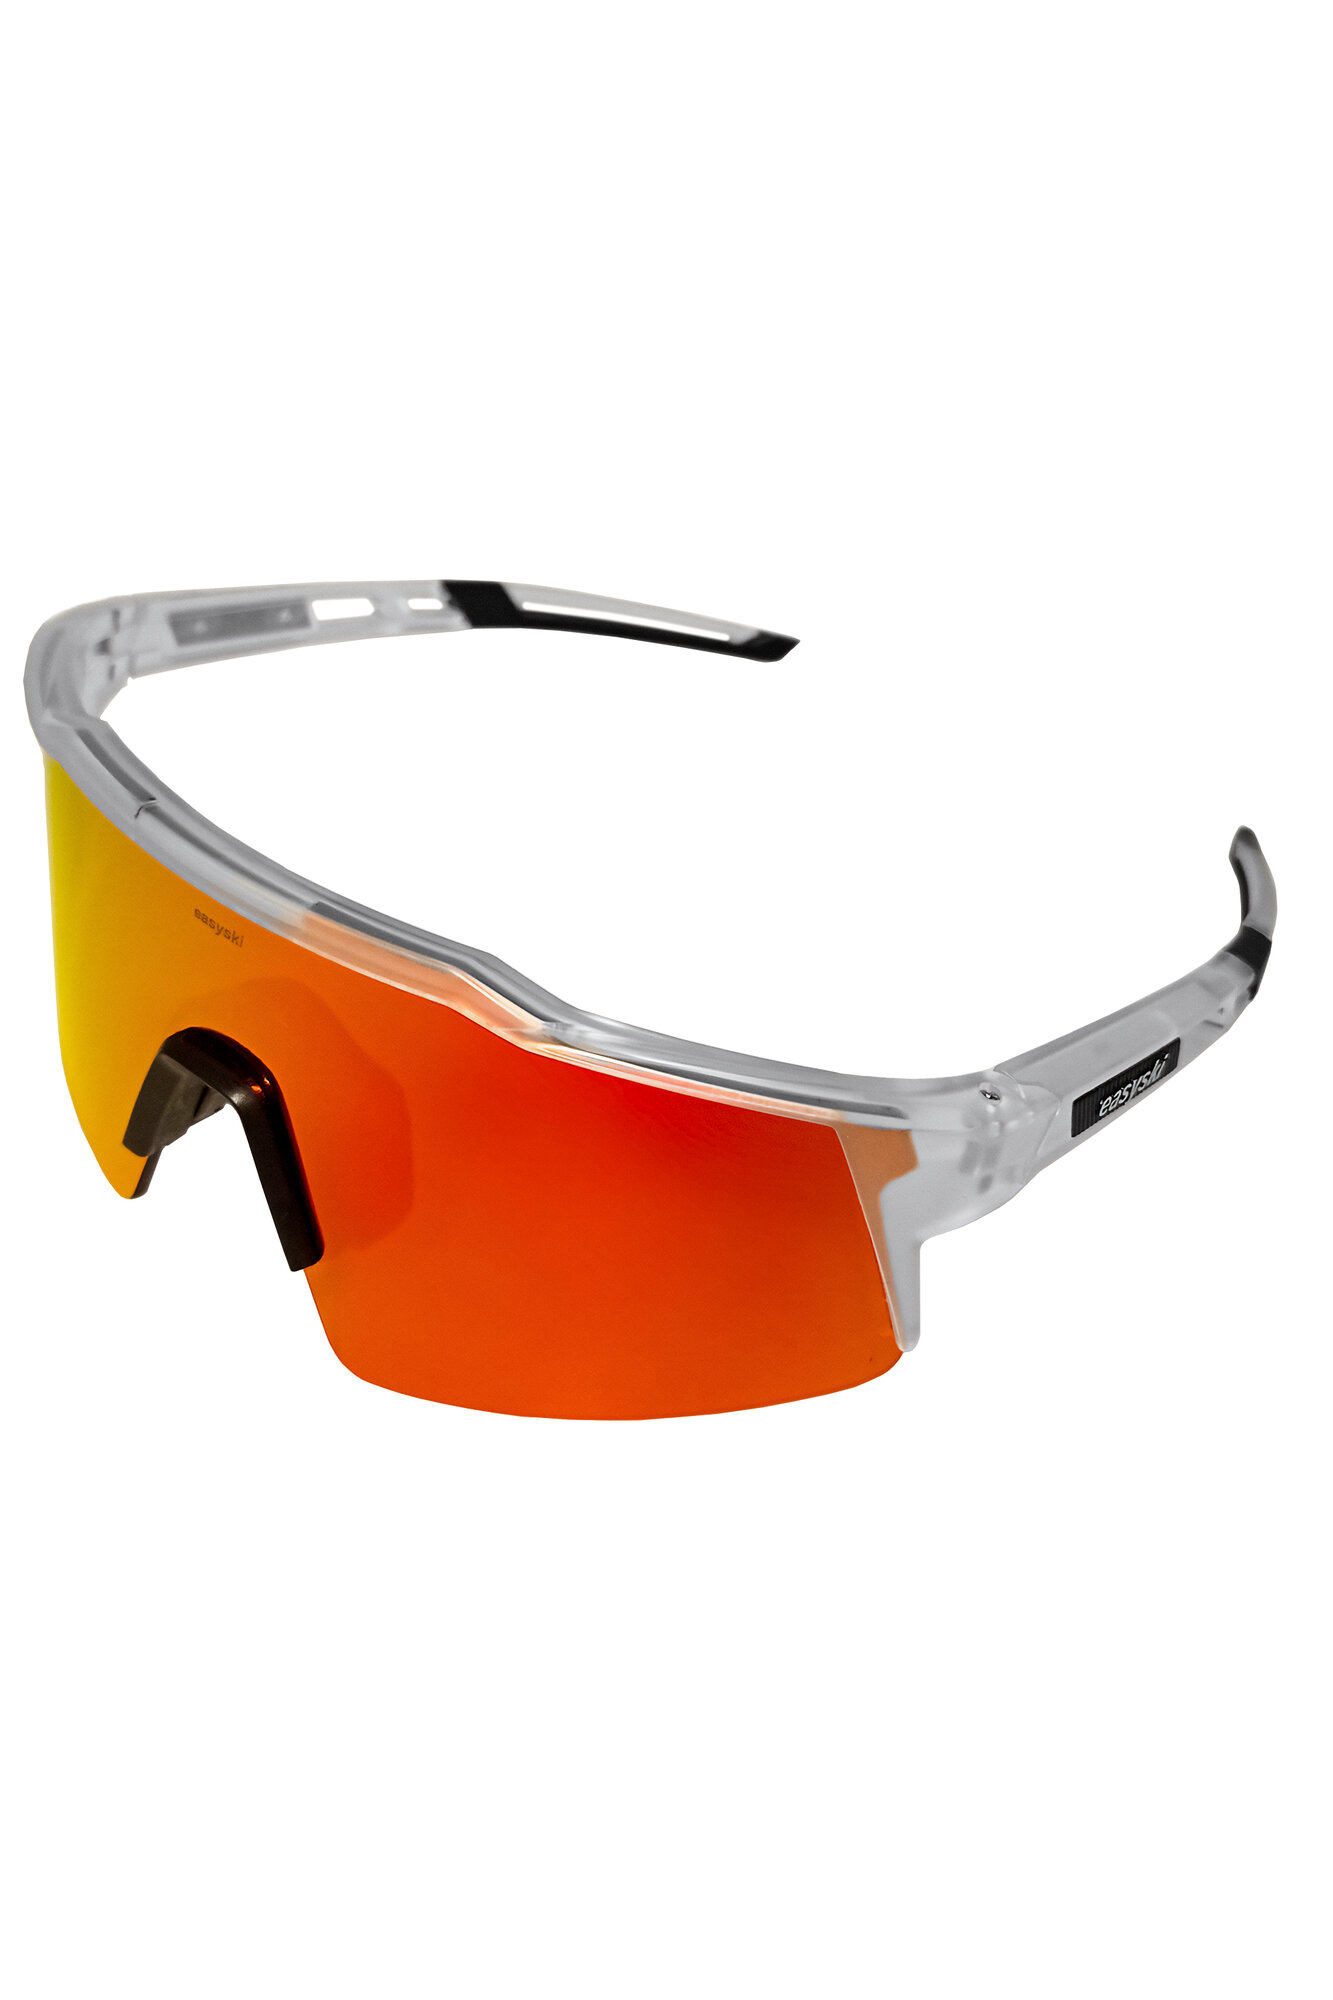 Солнцезащитные очки EASY SKI  Солнцезащитные очки спортивные унисекс Easy Ski для велосипеда, туризма, бега, лыжероллеров, лыж, бега велосипедные очки